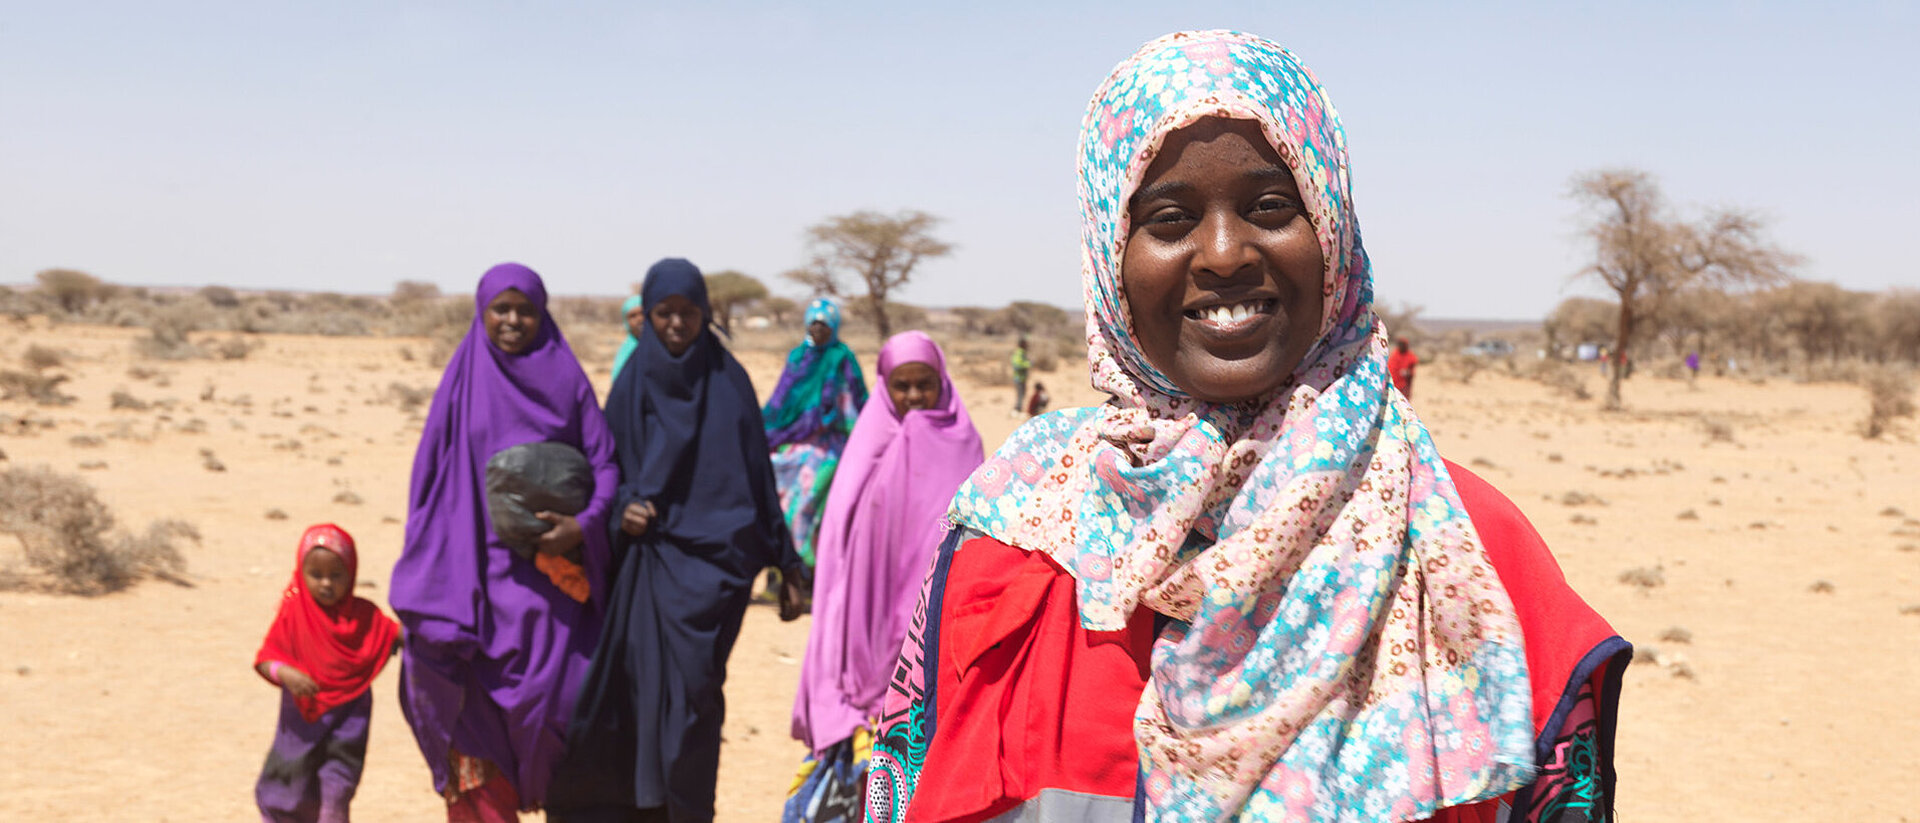 Frauen auf dem Land in Somalia